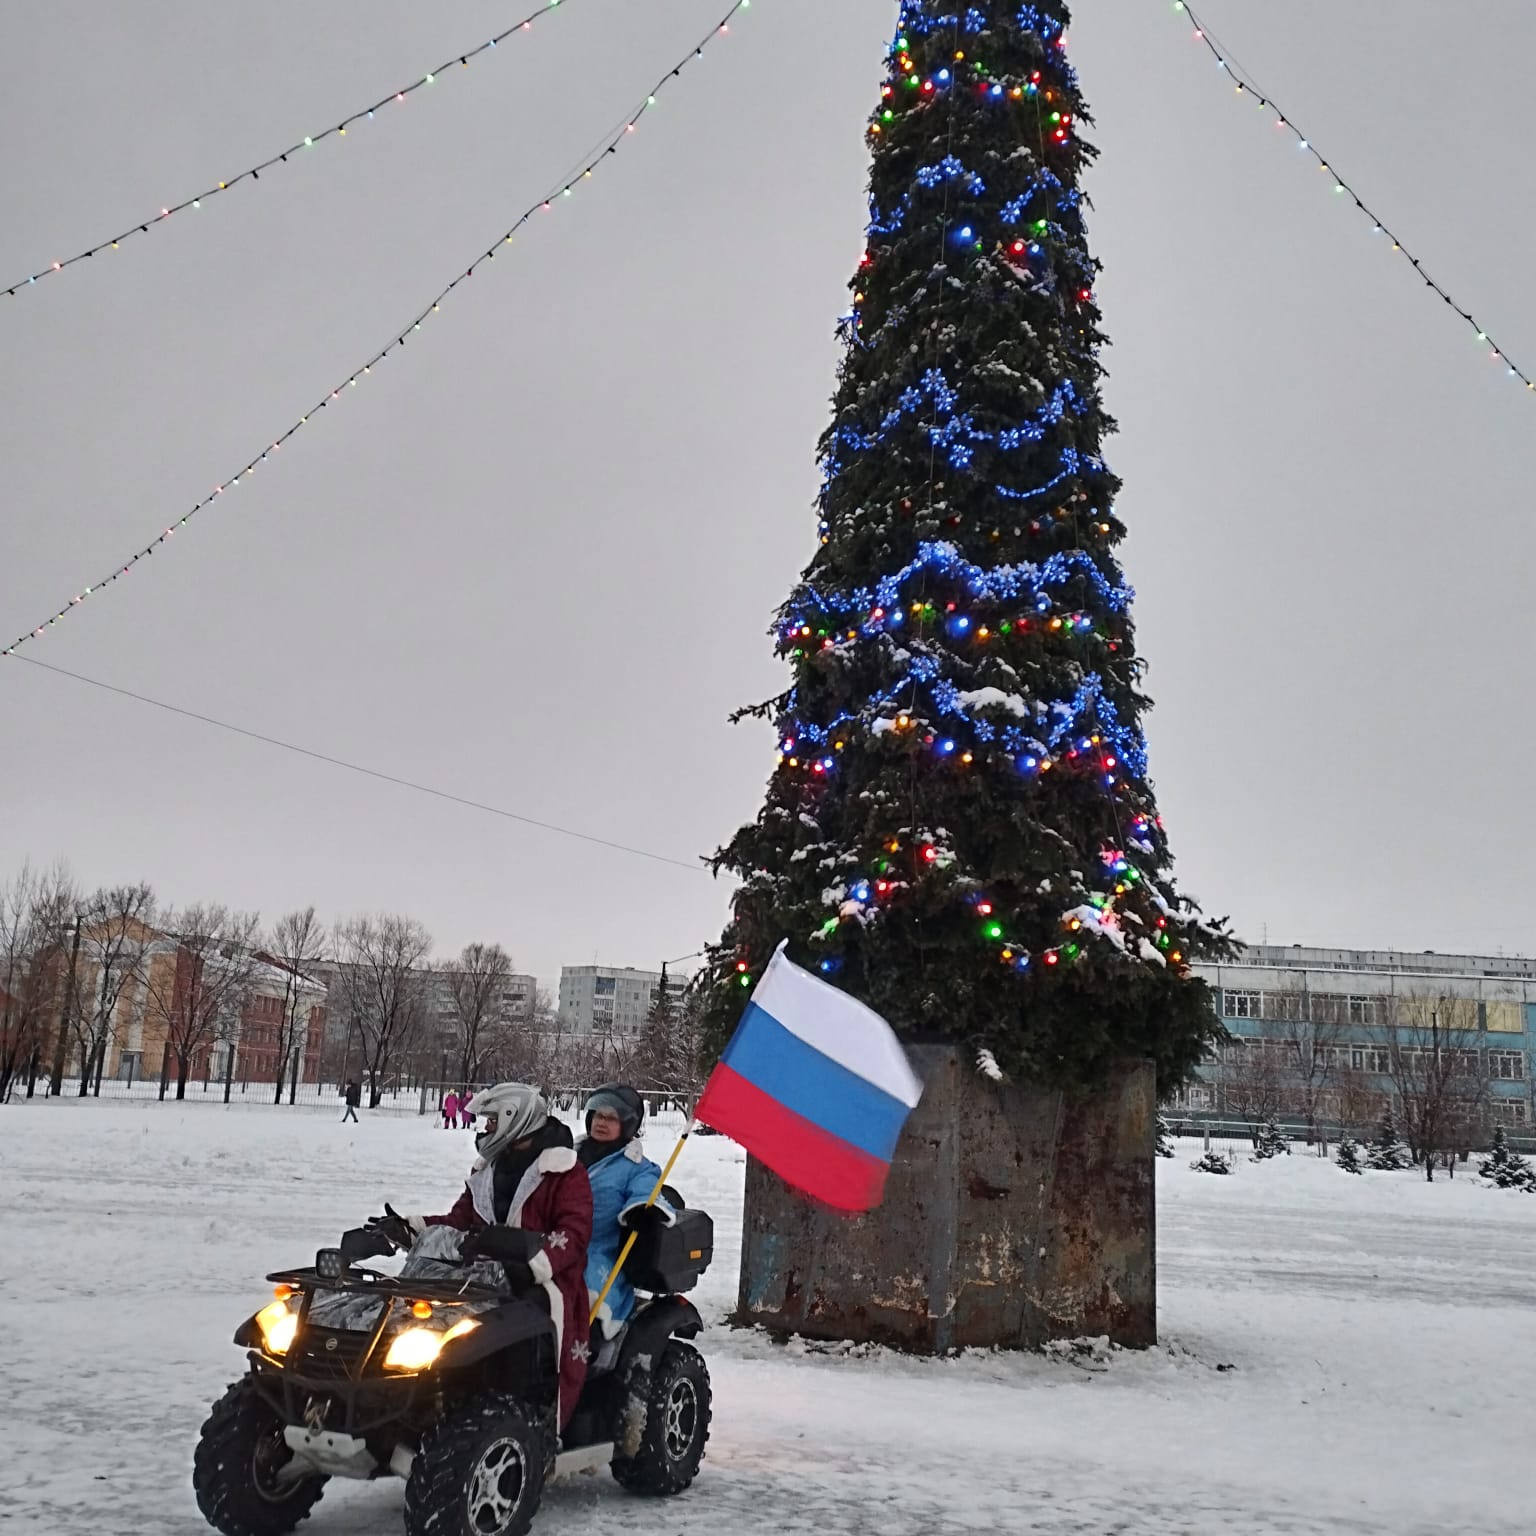 В Новокузнецке Дед Мороз со Снегурочкой приехали к ребятне на квадроцикле  